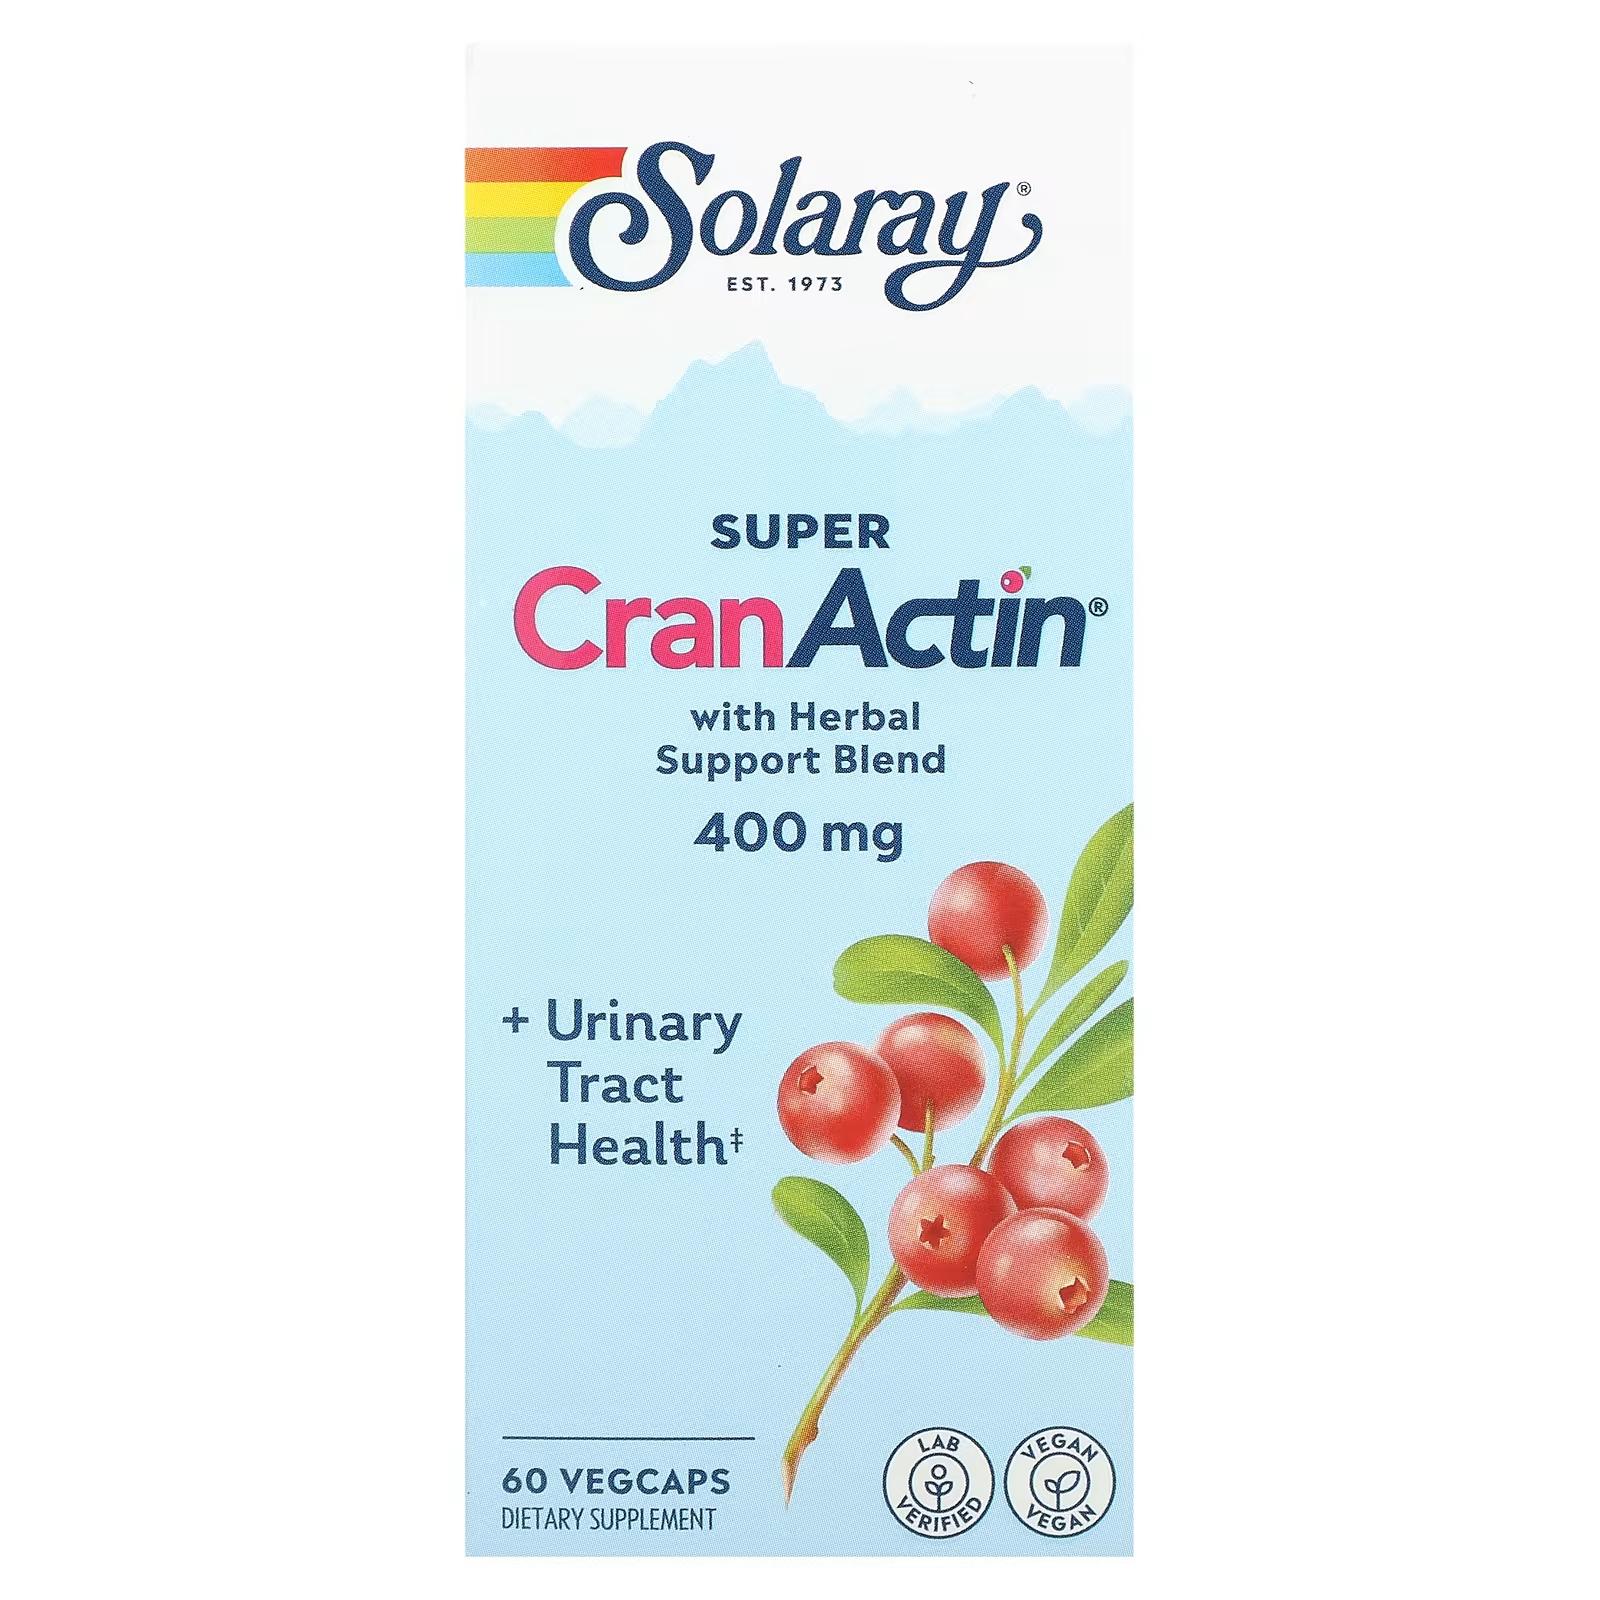 Solaray Super CranActin со смесью травяной поддержки 400 мг 60 растительных капсул solaray super cranactin со смесью трав 400 мг 60 растительных капсул